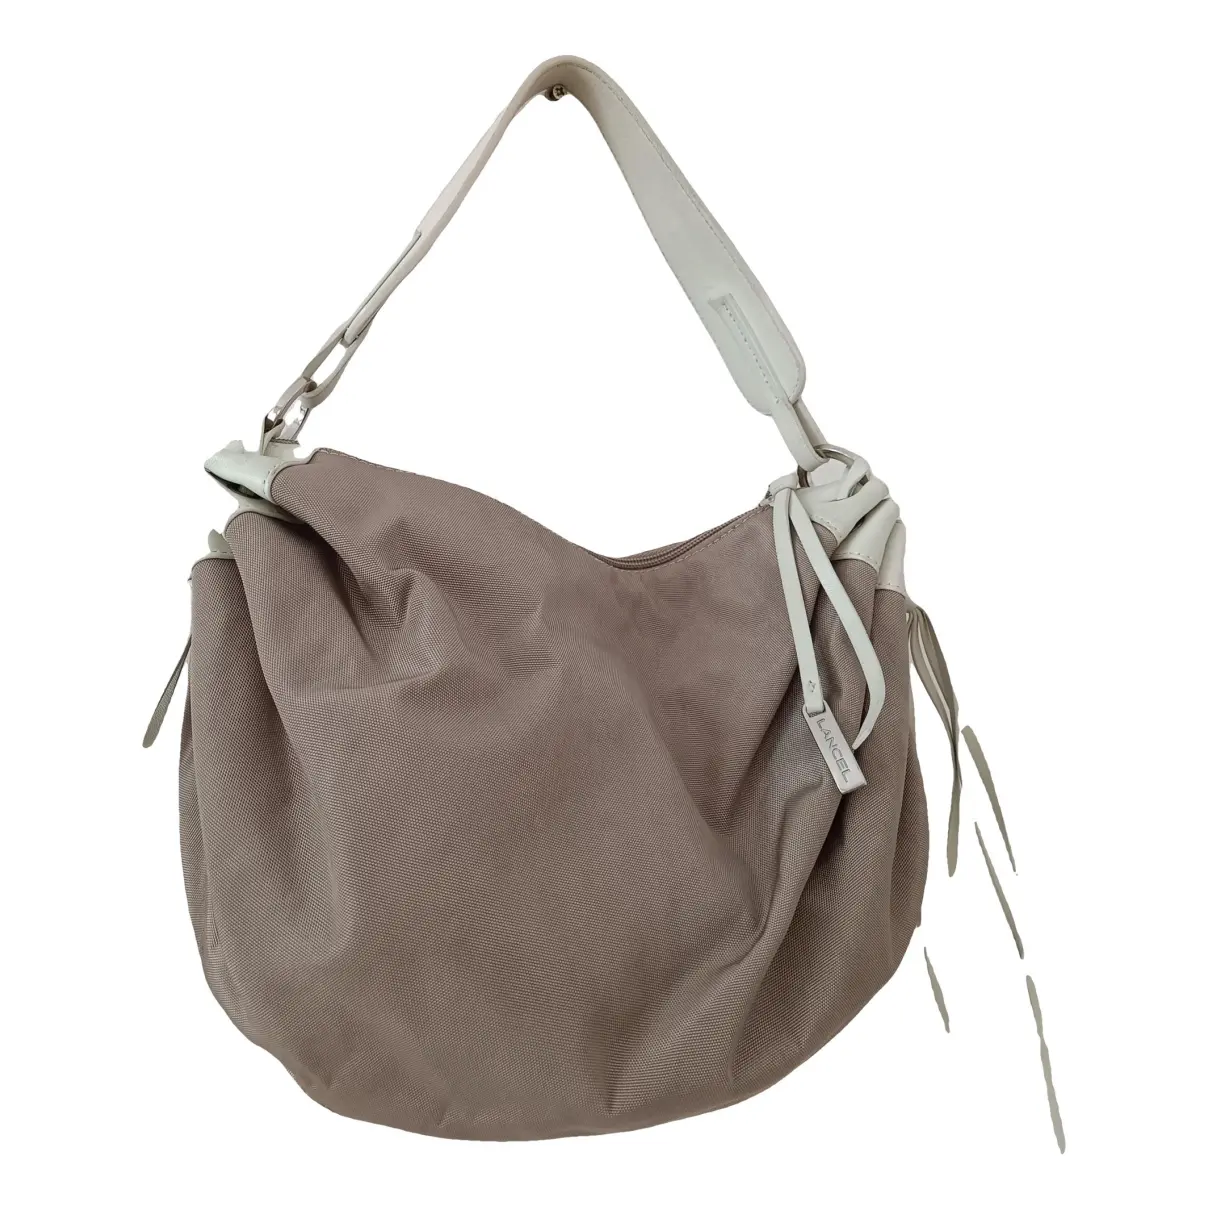 Brigitte Bardot cloth handbag